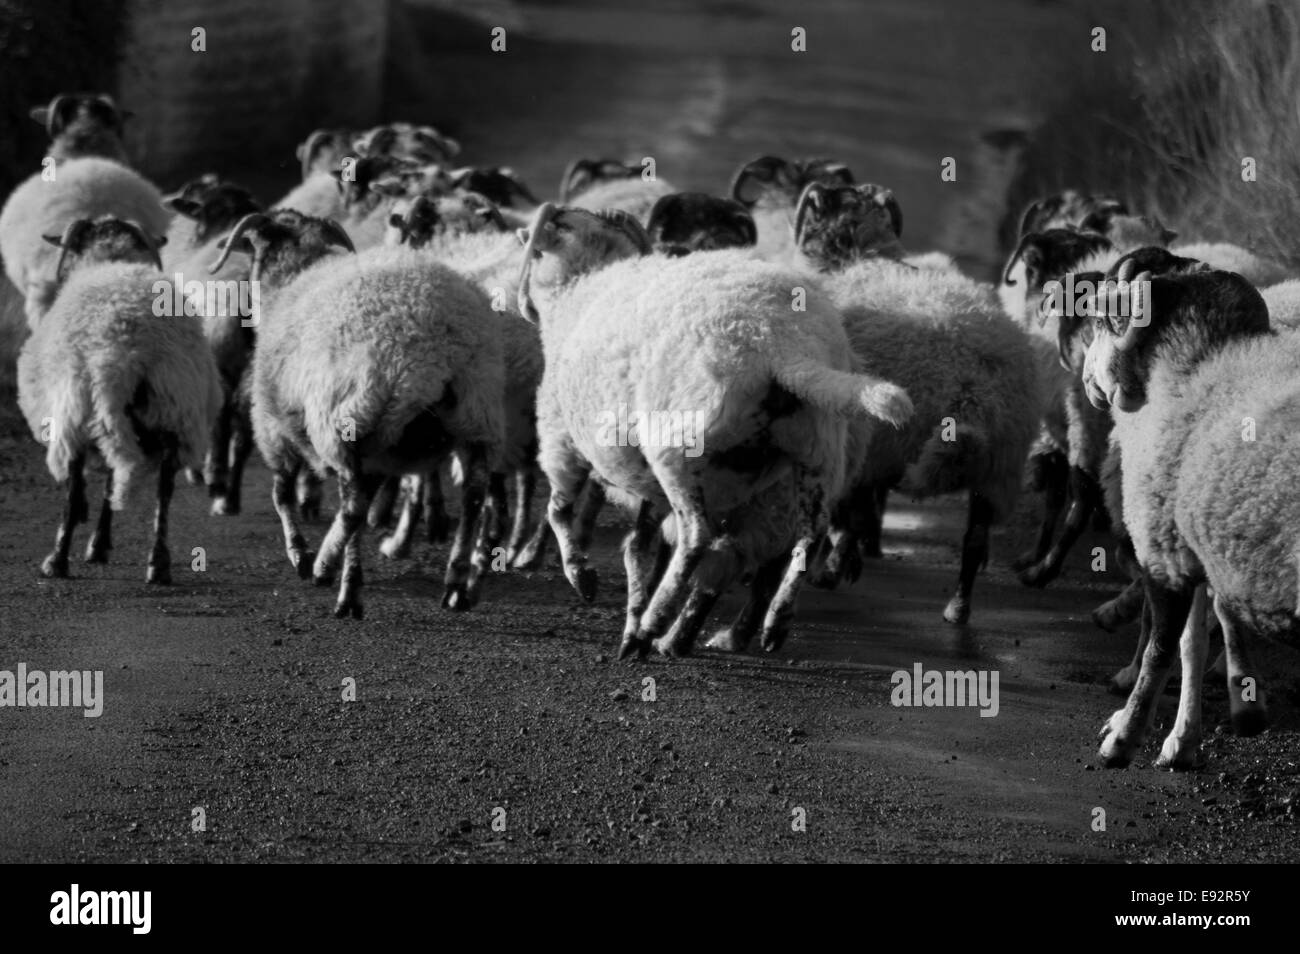 Les moutons courant le long d'une route de campagne Banque D'Images